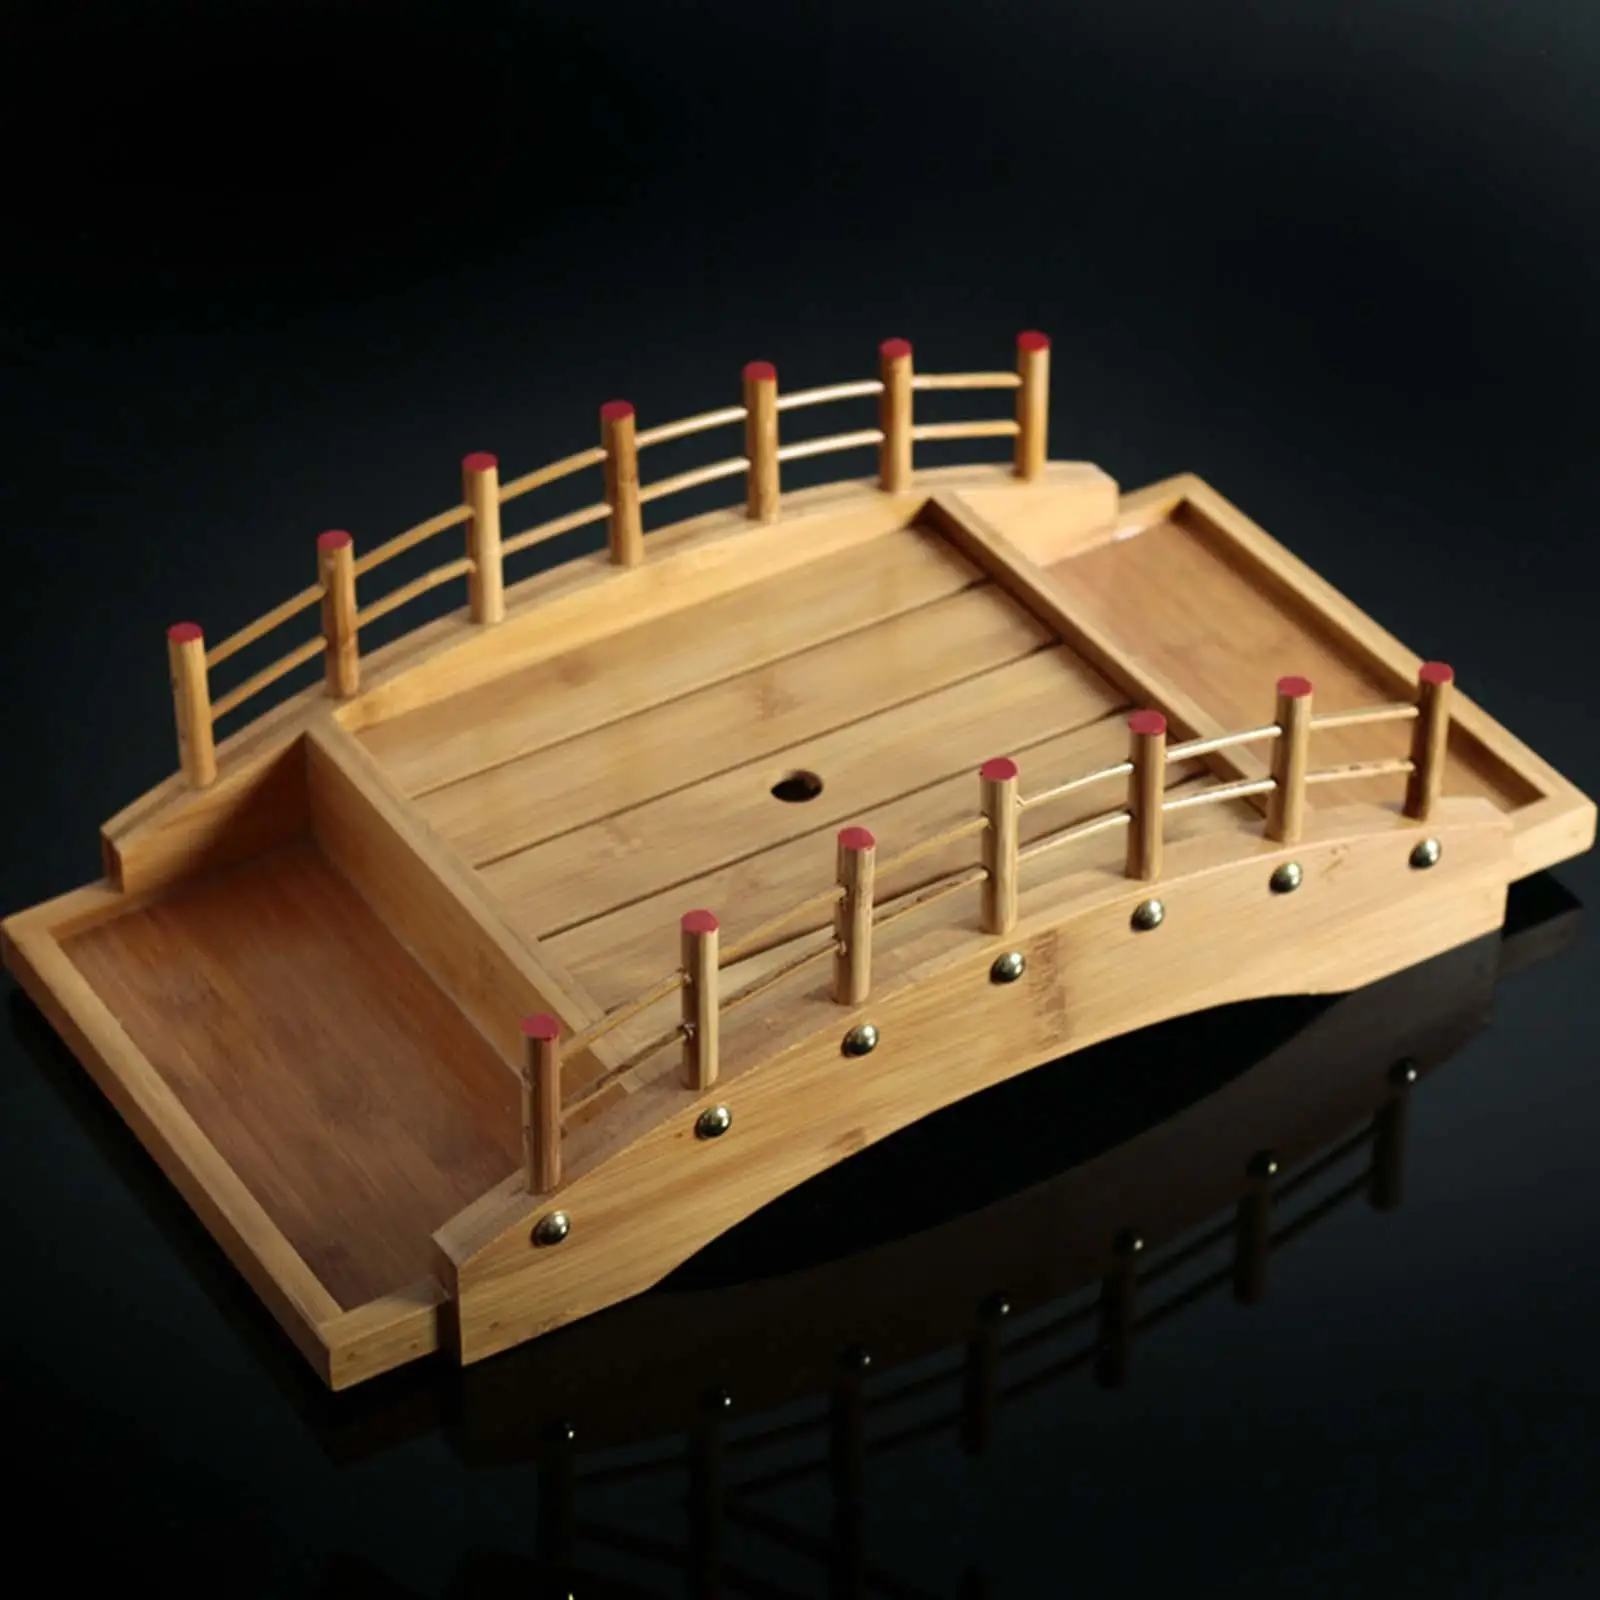 Wooden Sushi Bridge Tray Serving Platter Ornament for Japanese cuisine Dessert